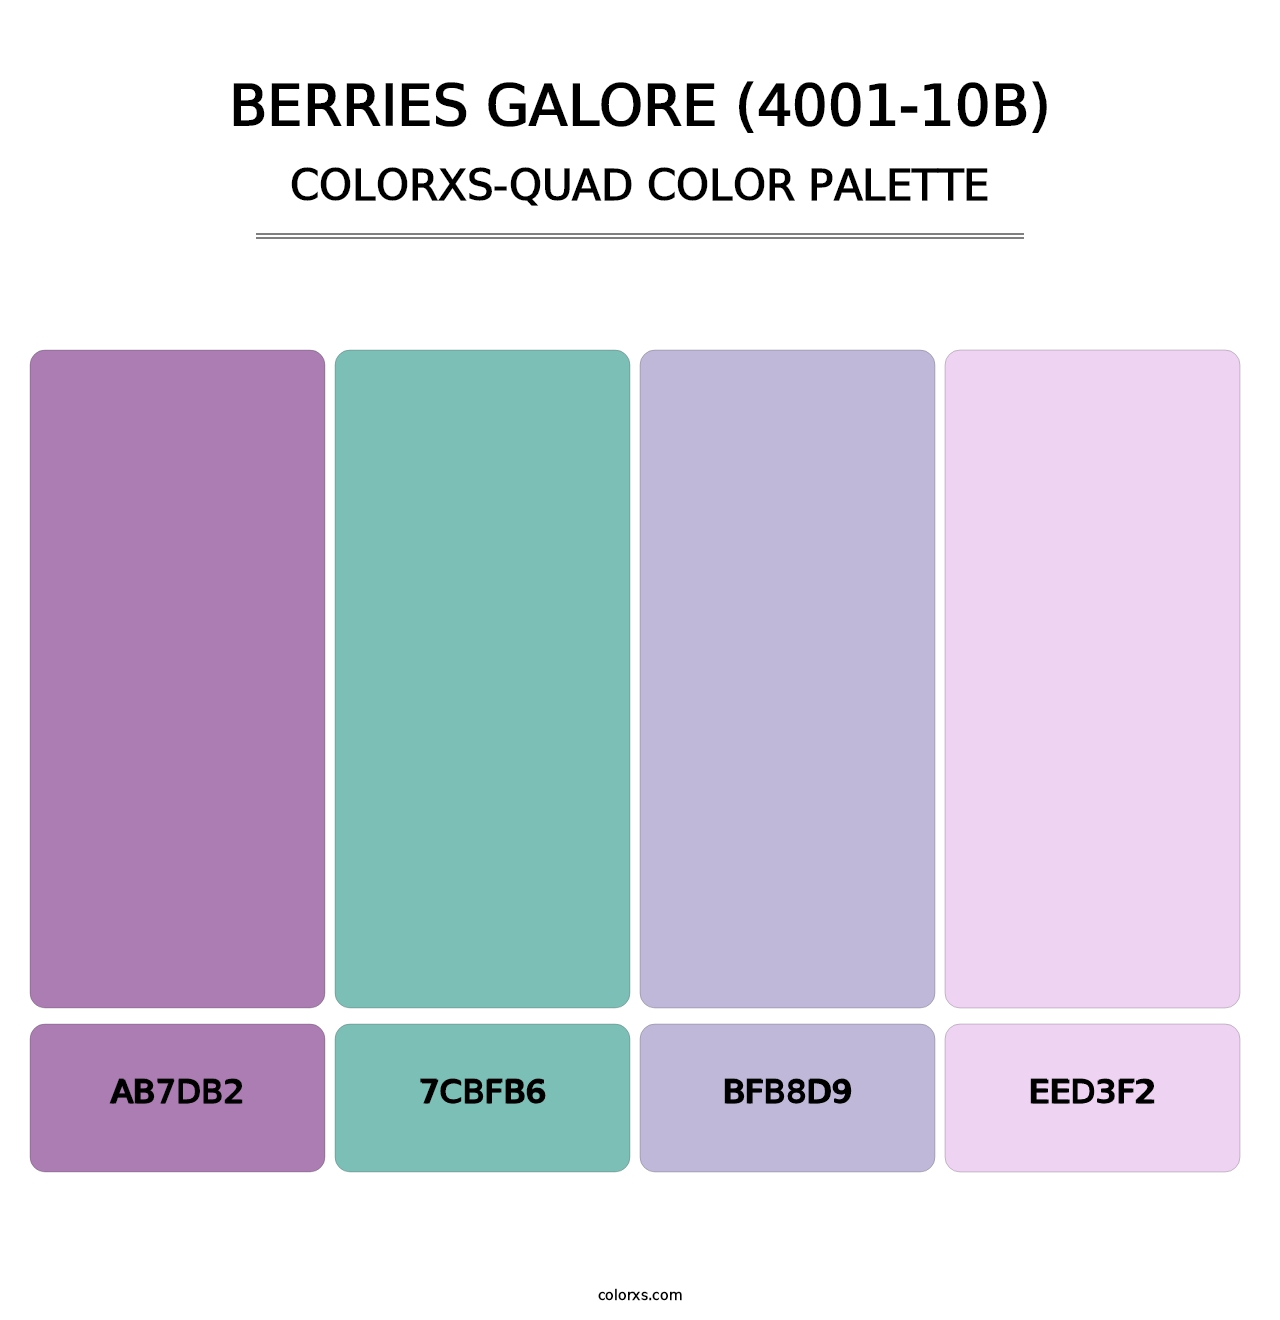 Berries Galore (4001-10B) - Colorxs Quad Palette